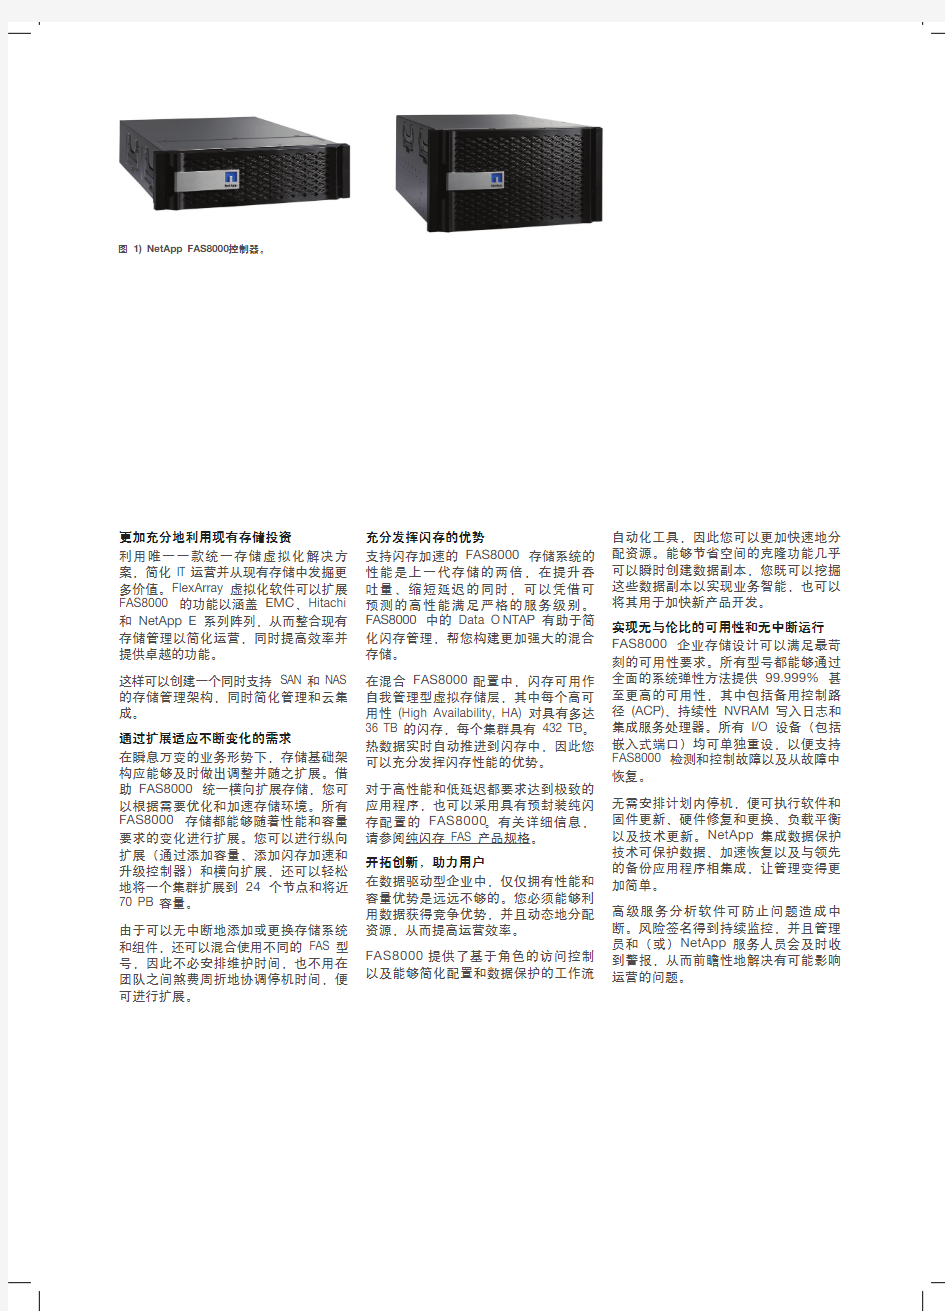 NetApp FAS8000 系列产品介绍